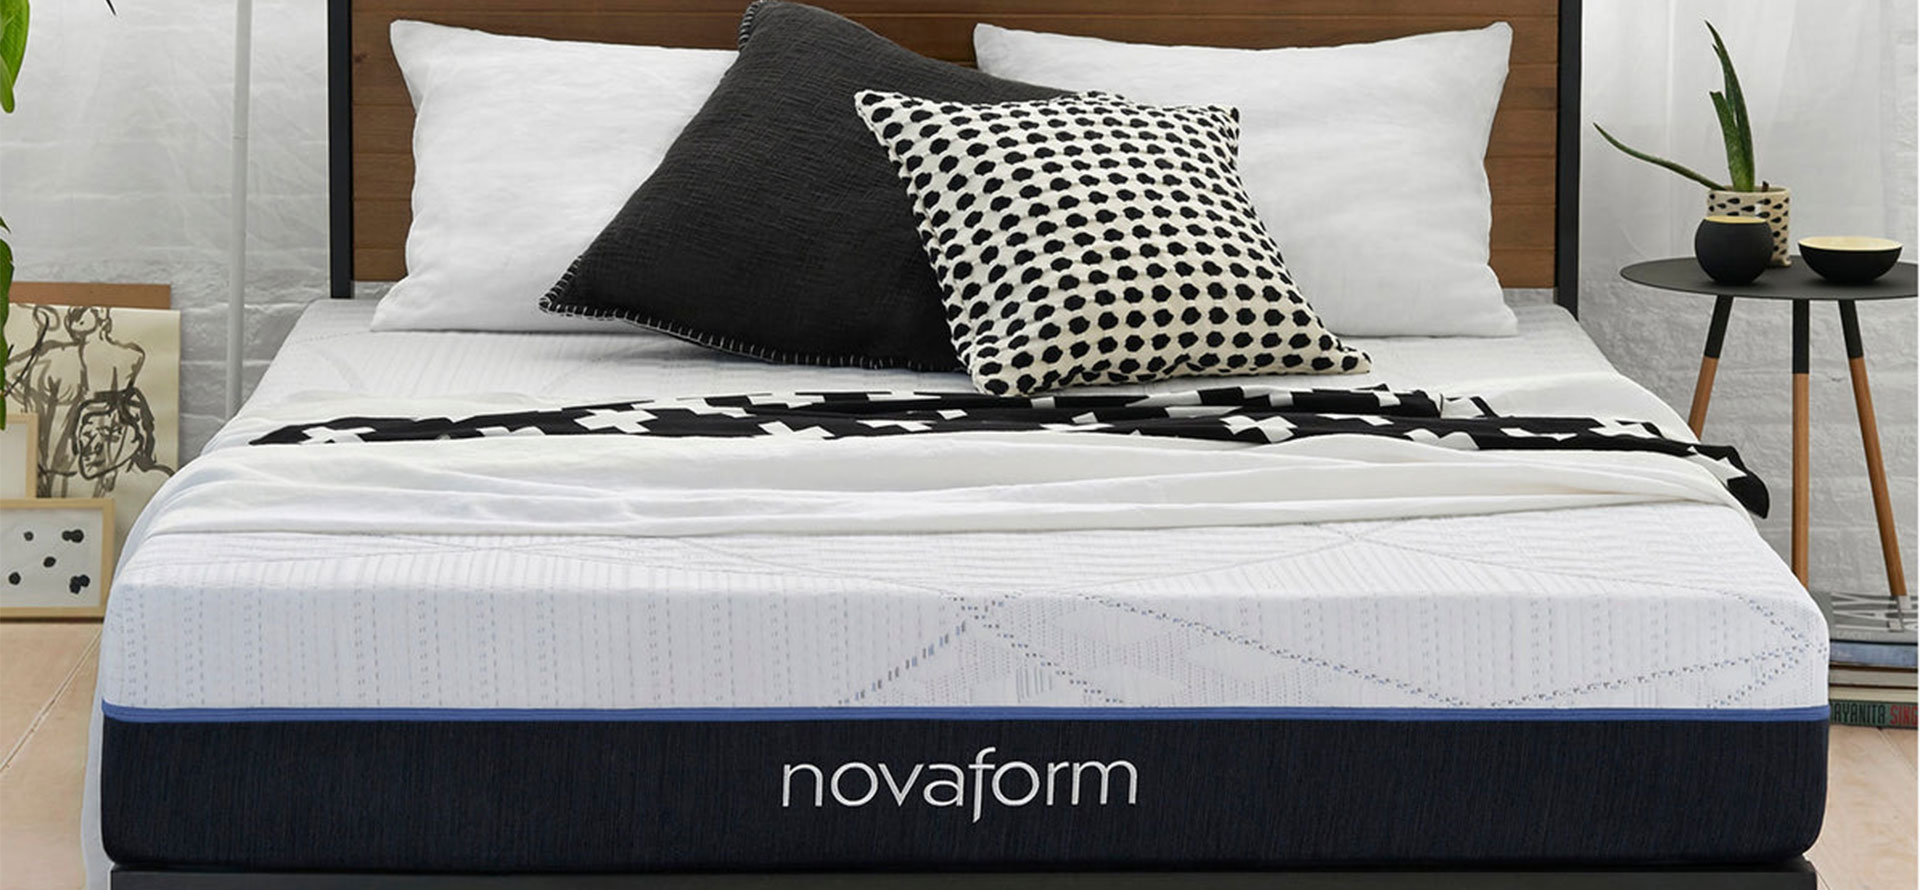 Novaform mattress and pillows.